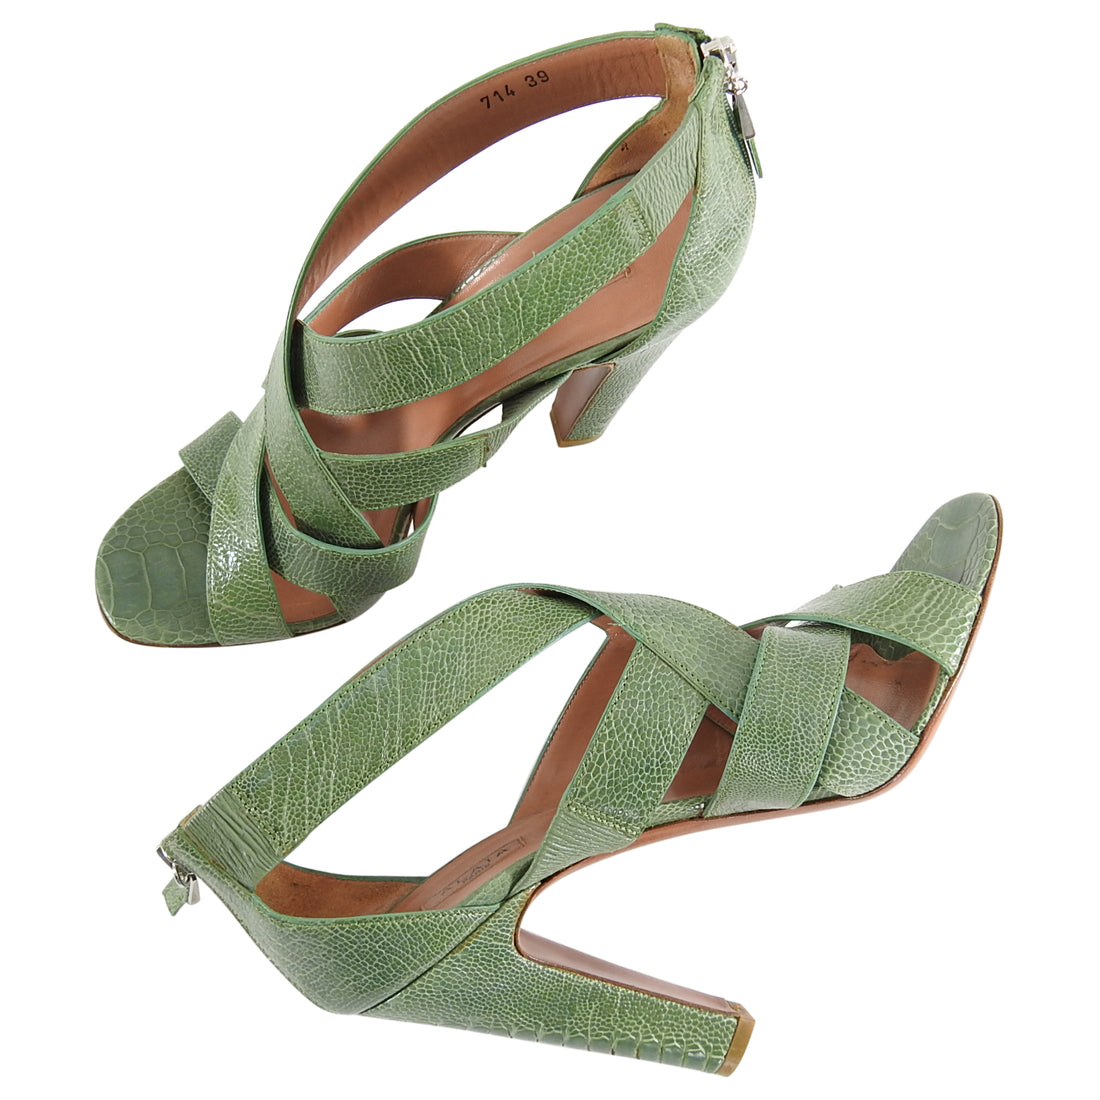 Alaia Green Lizard Criss Cross High Heel Sandals - 39